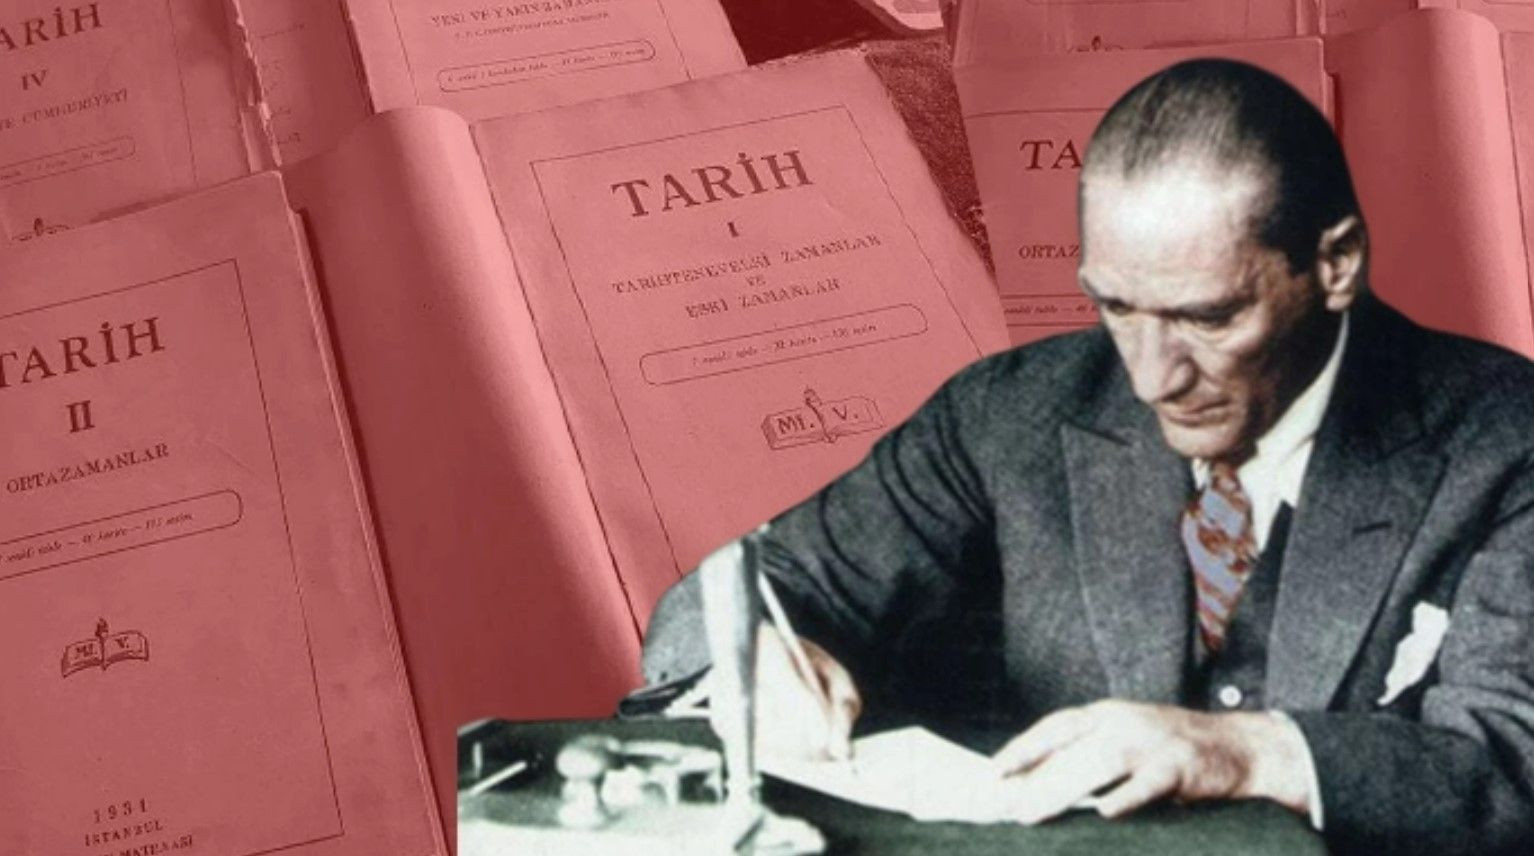 NATO'ya girişimizle birlikte bu kitaplar da yasaklandı! İşte Atatürk'ün yasaklanan Tarih kitabı! - Resim: 3